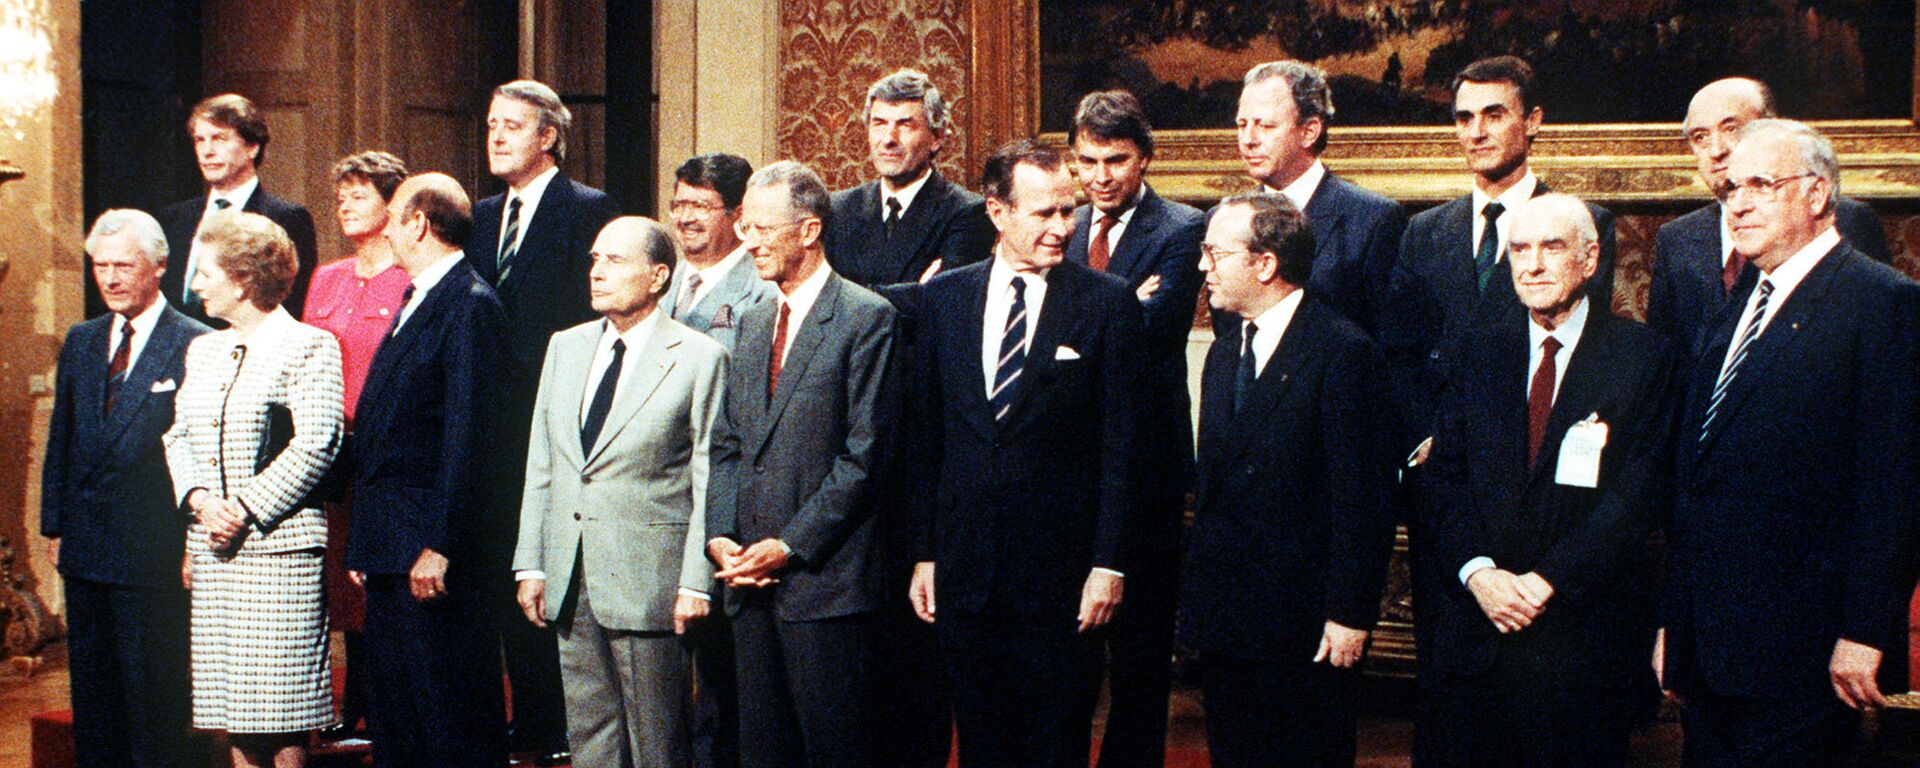 La cumbre de la OTAN del 29 de mayo de 1989 - Sputnik Mundo, 1920, 14.12.2017